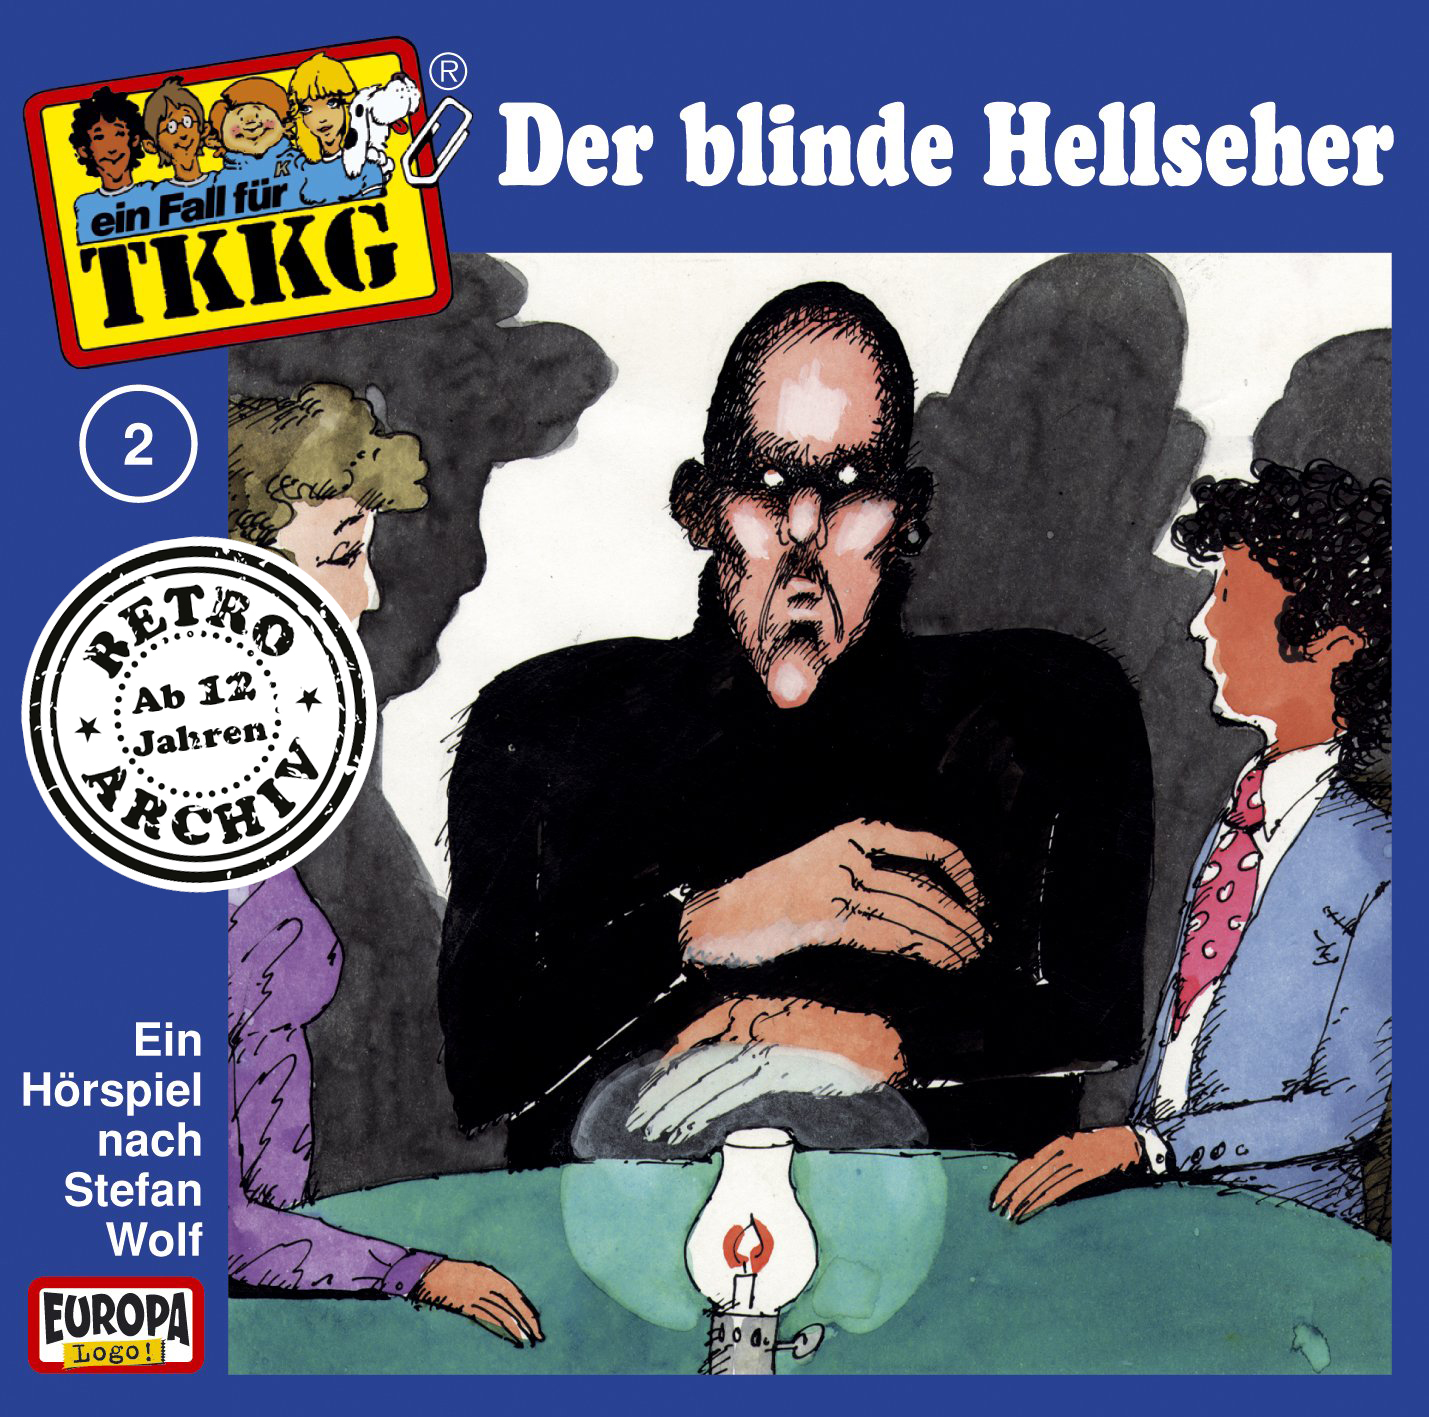 TKKG Retro-Archiv: Der blinde Hellseher